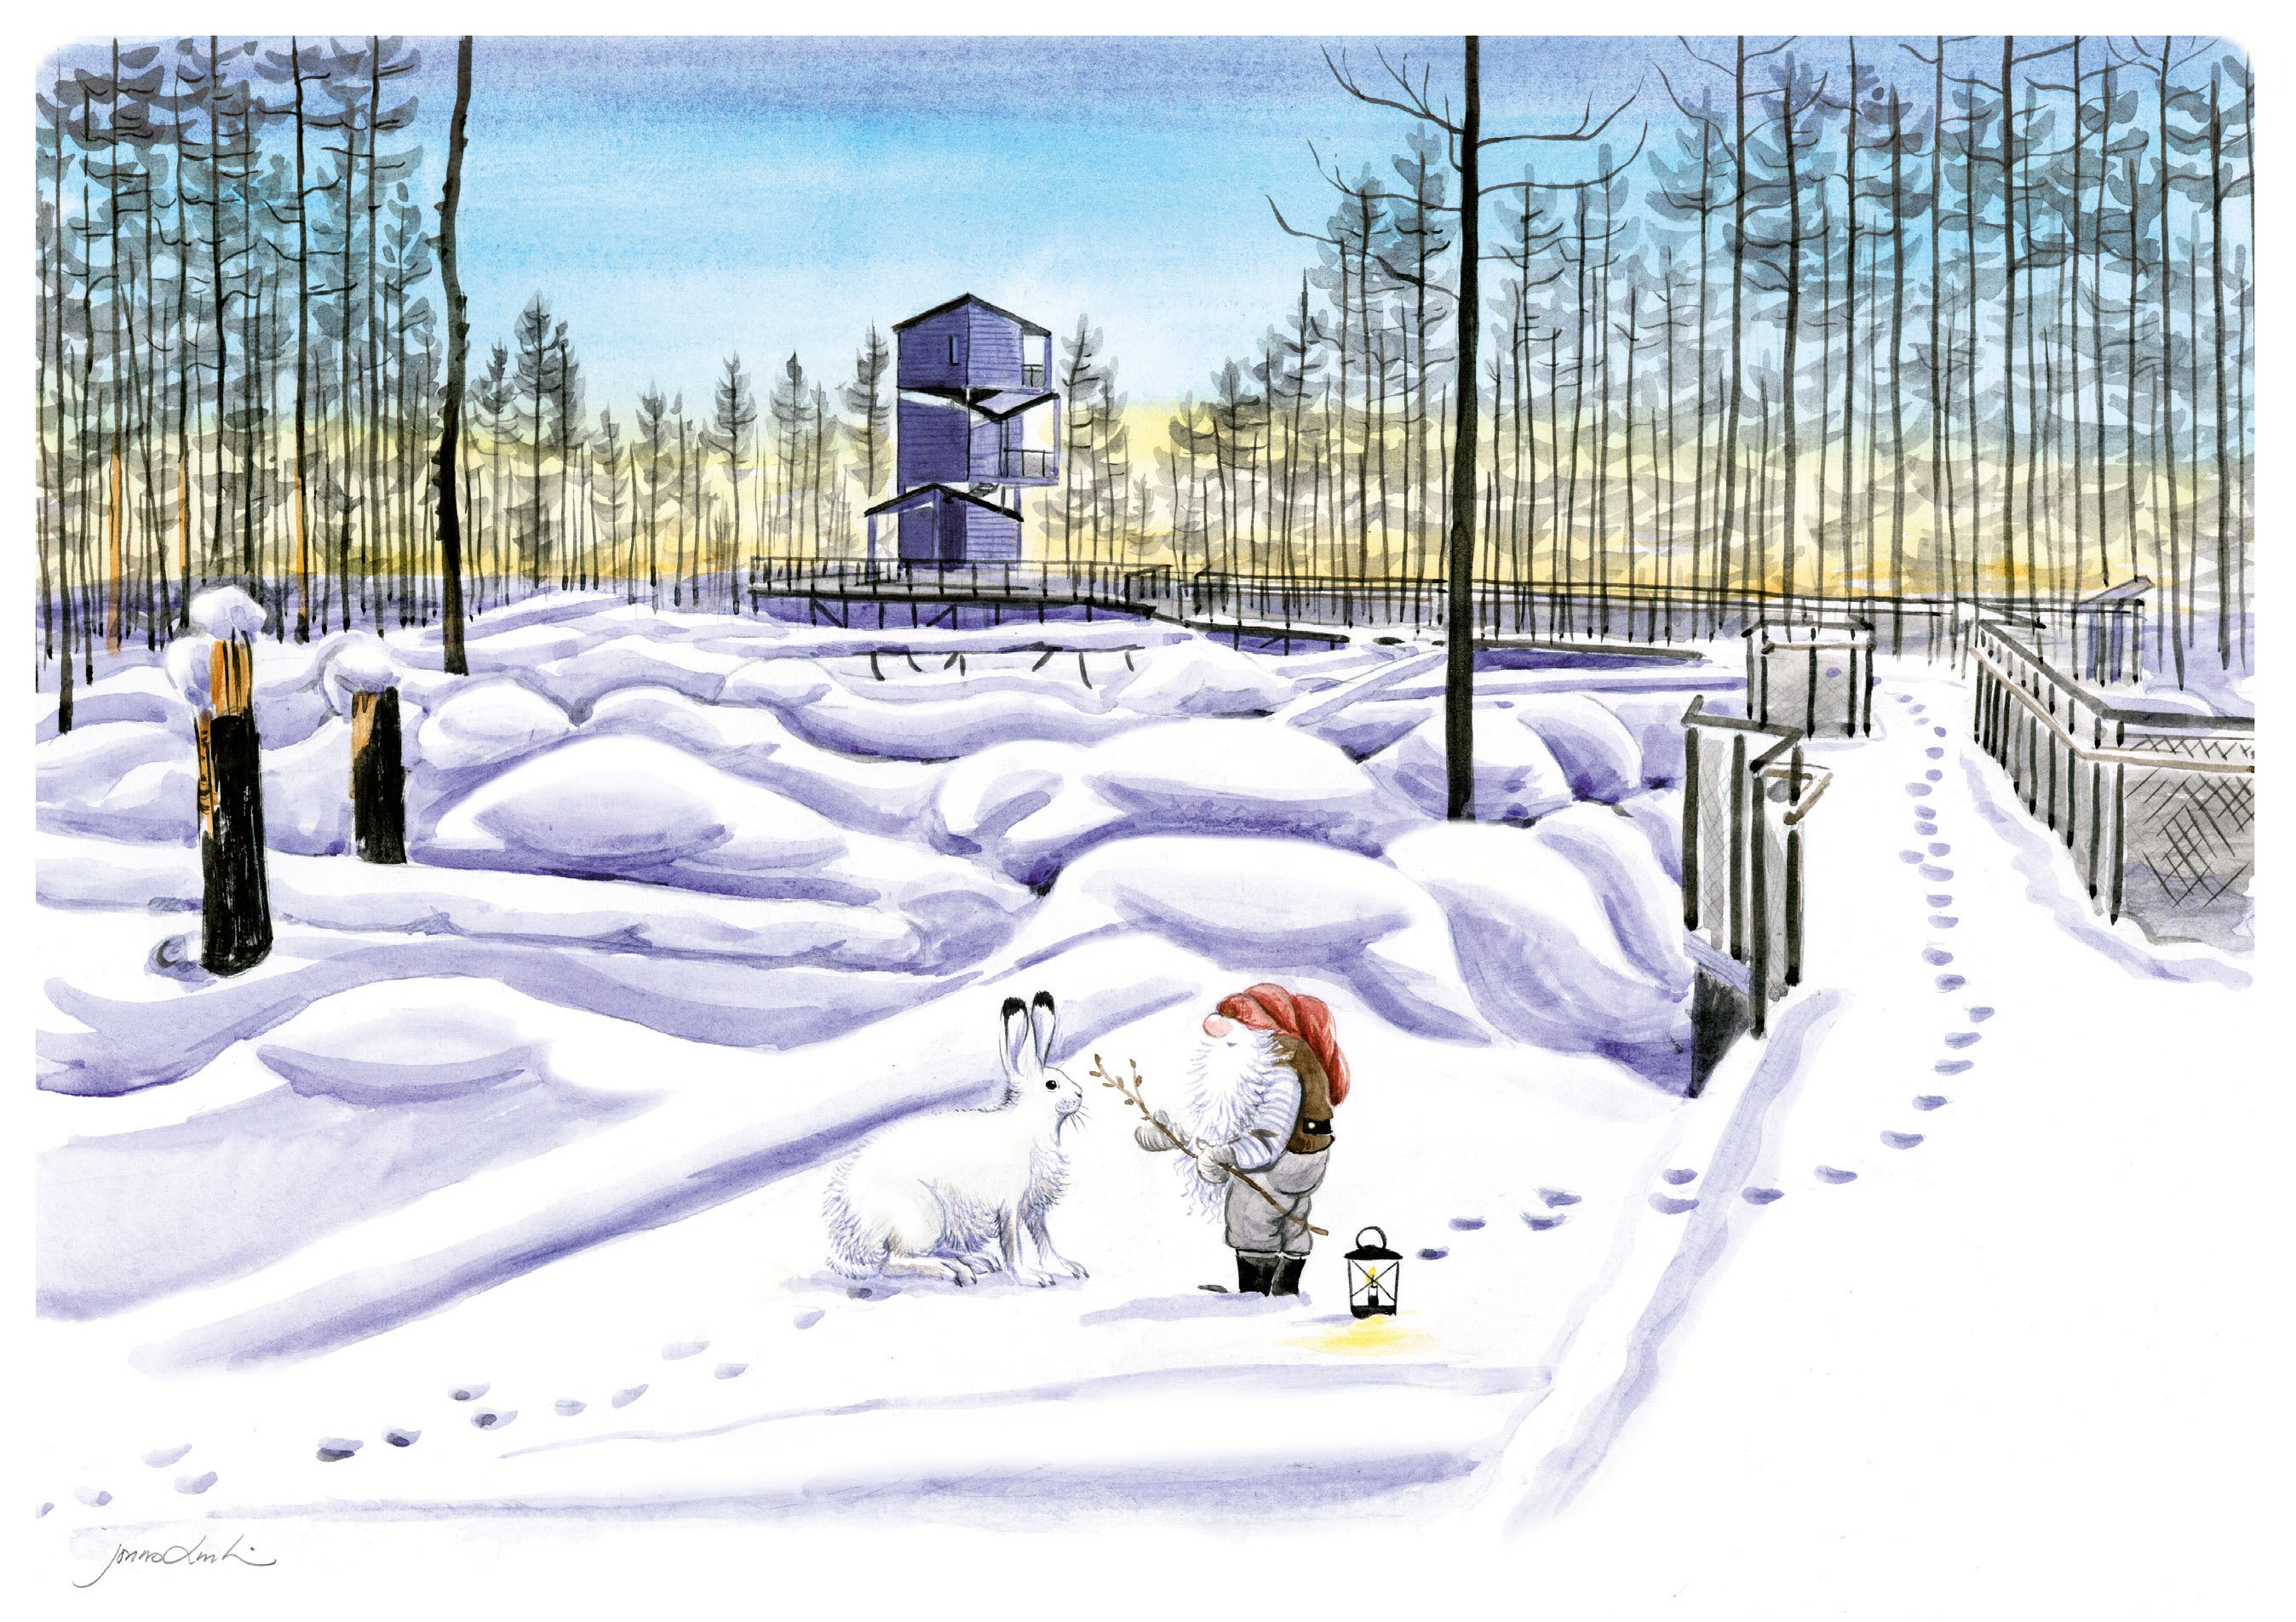 En målning av ett snöigt landskap. I förgrunden står en hare i vit vinterskrud tillsammans med en tomte med skägg, röd luva och grå kläder. En lykta står i snön. I bakgrunden syns Hälleskogsbrännans utsiktstorn.